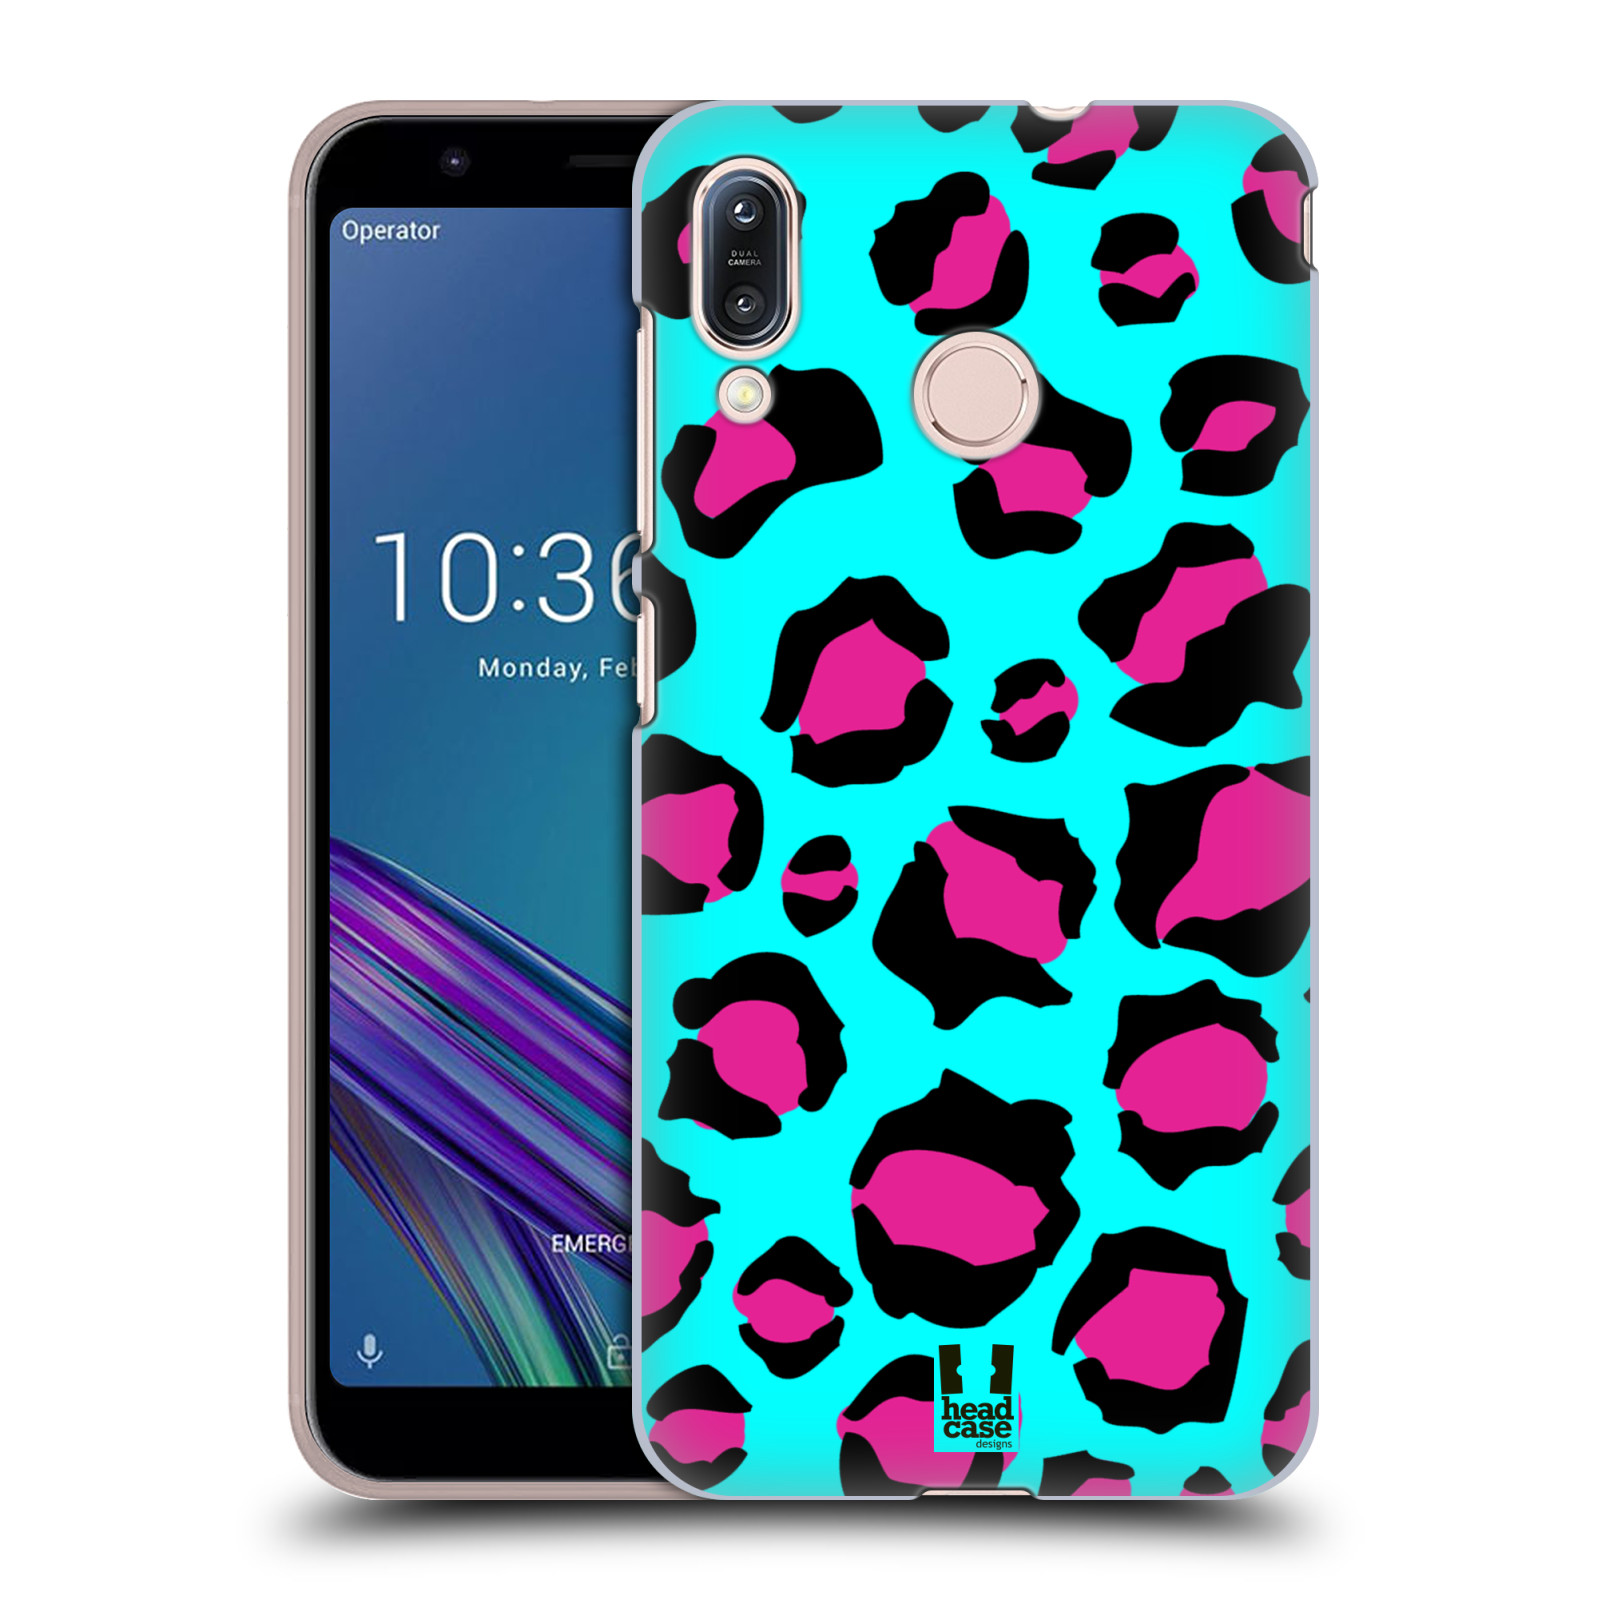 Pouzdro na mobil Asus Zenfone Max M1 (ZB555KL) - HEAD CASE - vzor Divočina zvíře tyrkysový leopard